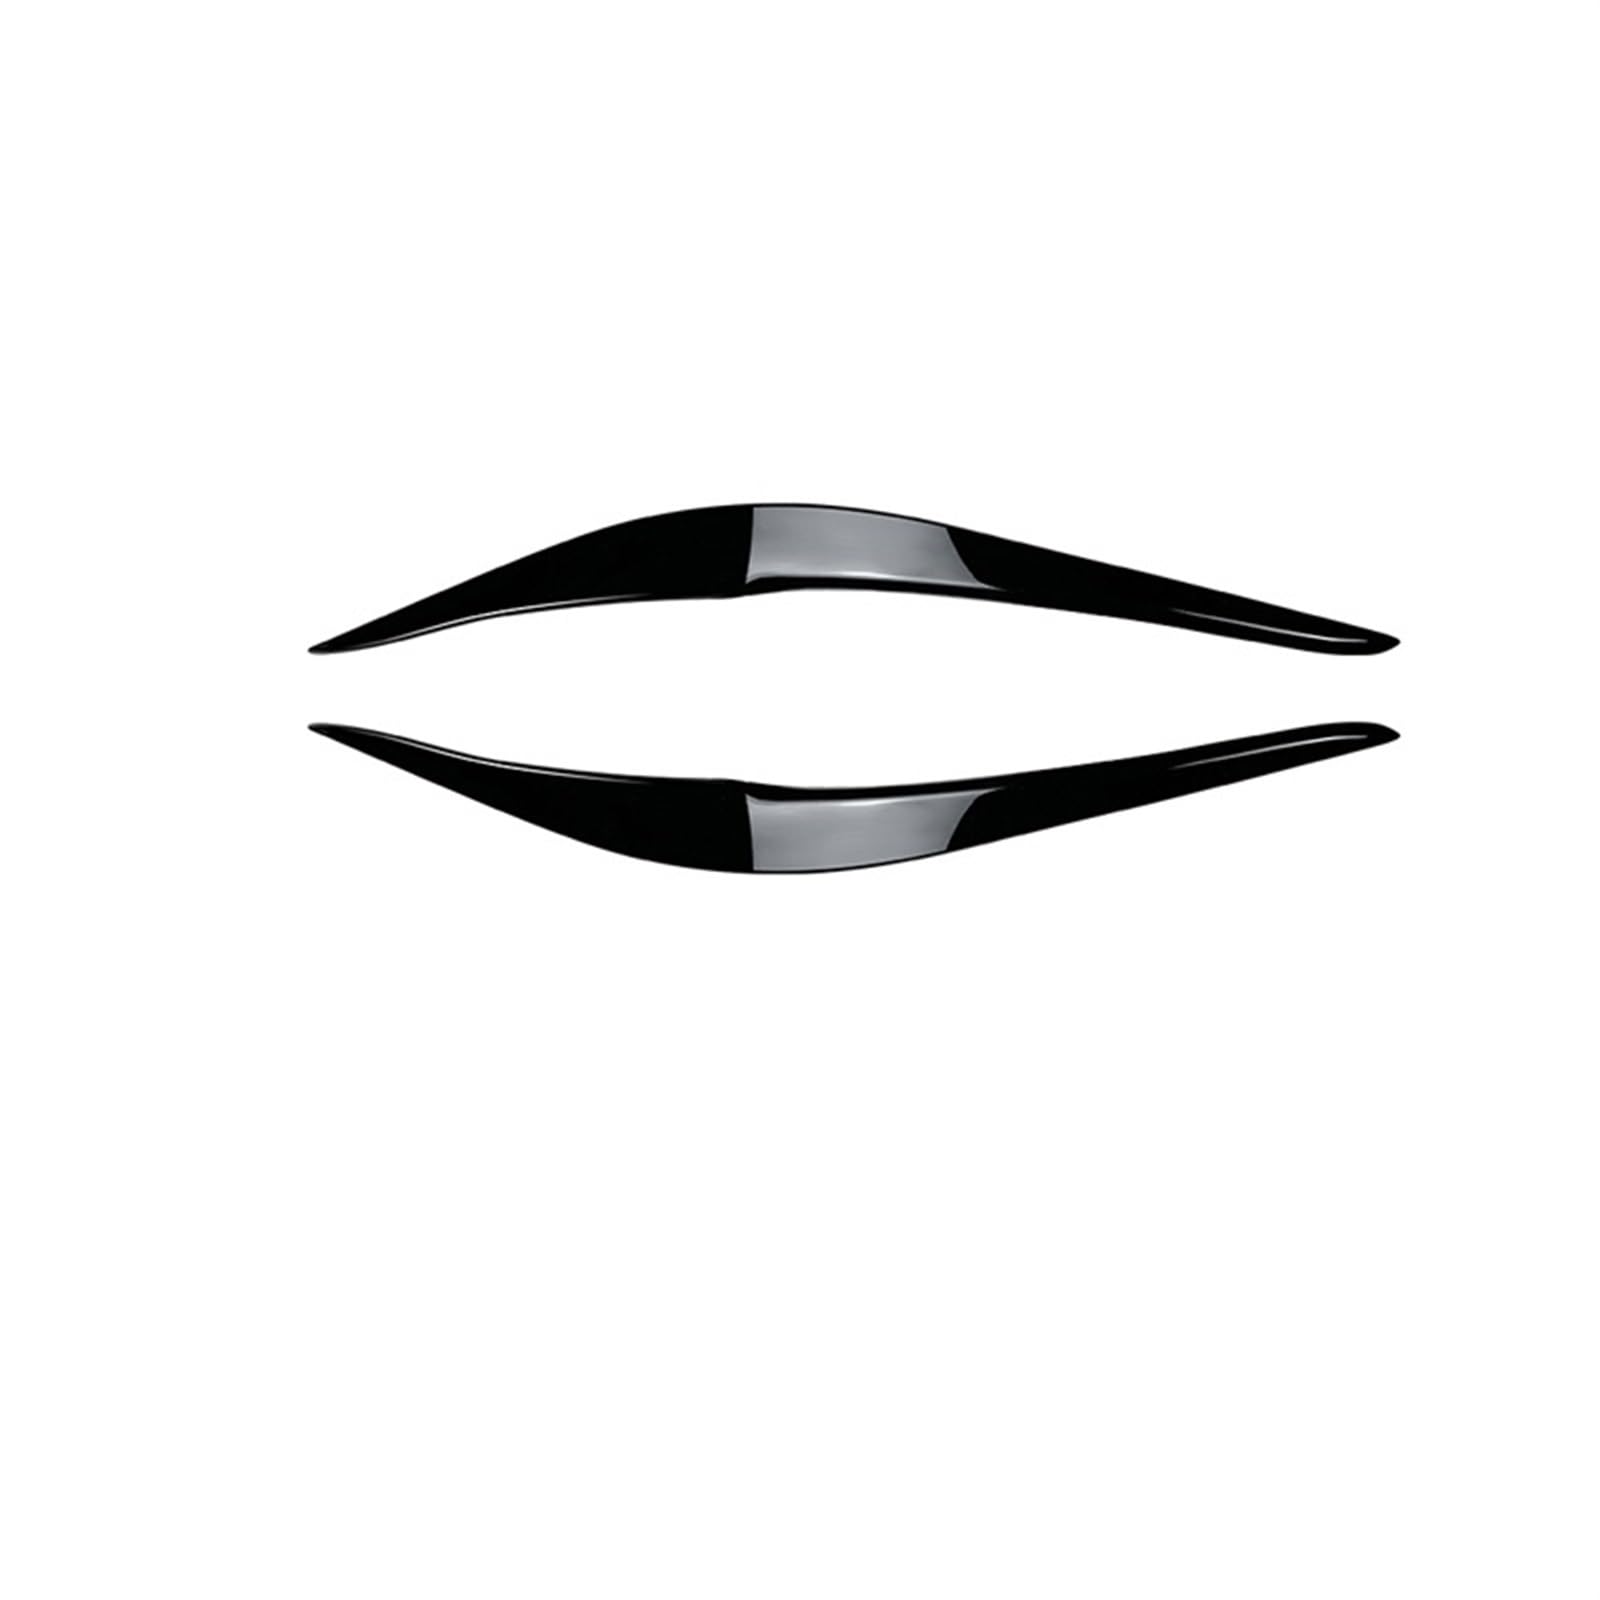 EVURU Scheinwerfer-Augenbrauen, Passend for BMW F87 M2 F22 F23 220i 228i 230i M235i M240i Frontscheinwerfer Augenbrauen Augenlid Paar glänzend schwarzer Aufkleber Zubehör 2014–2022 (Size : Gloss Blac von EVURU